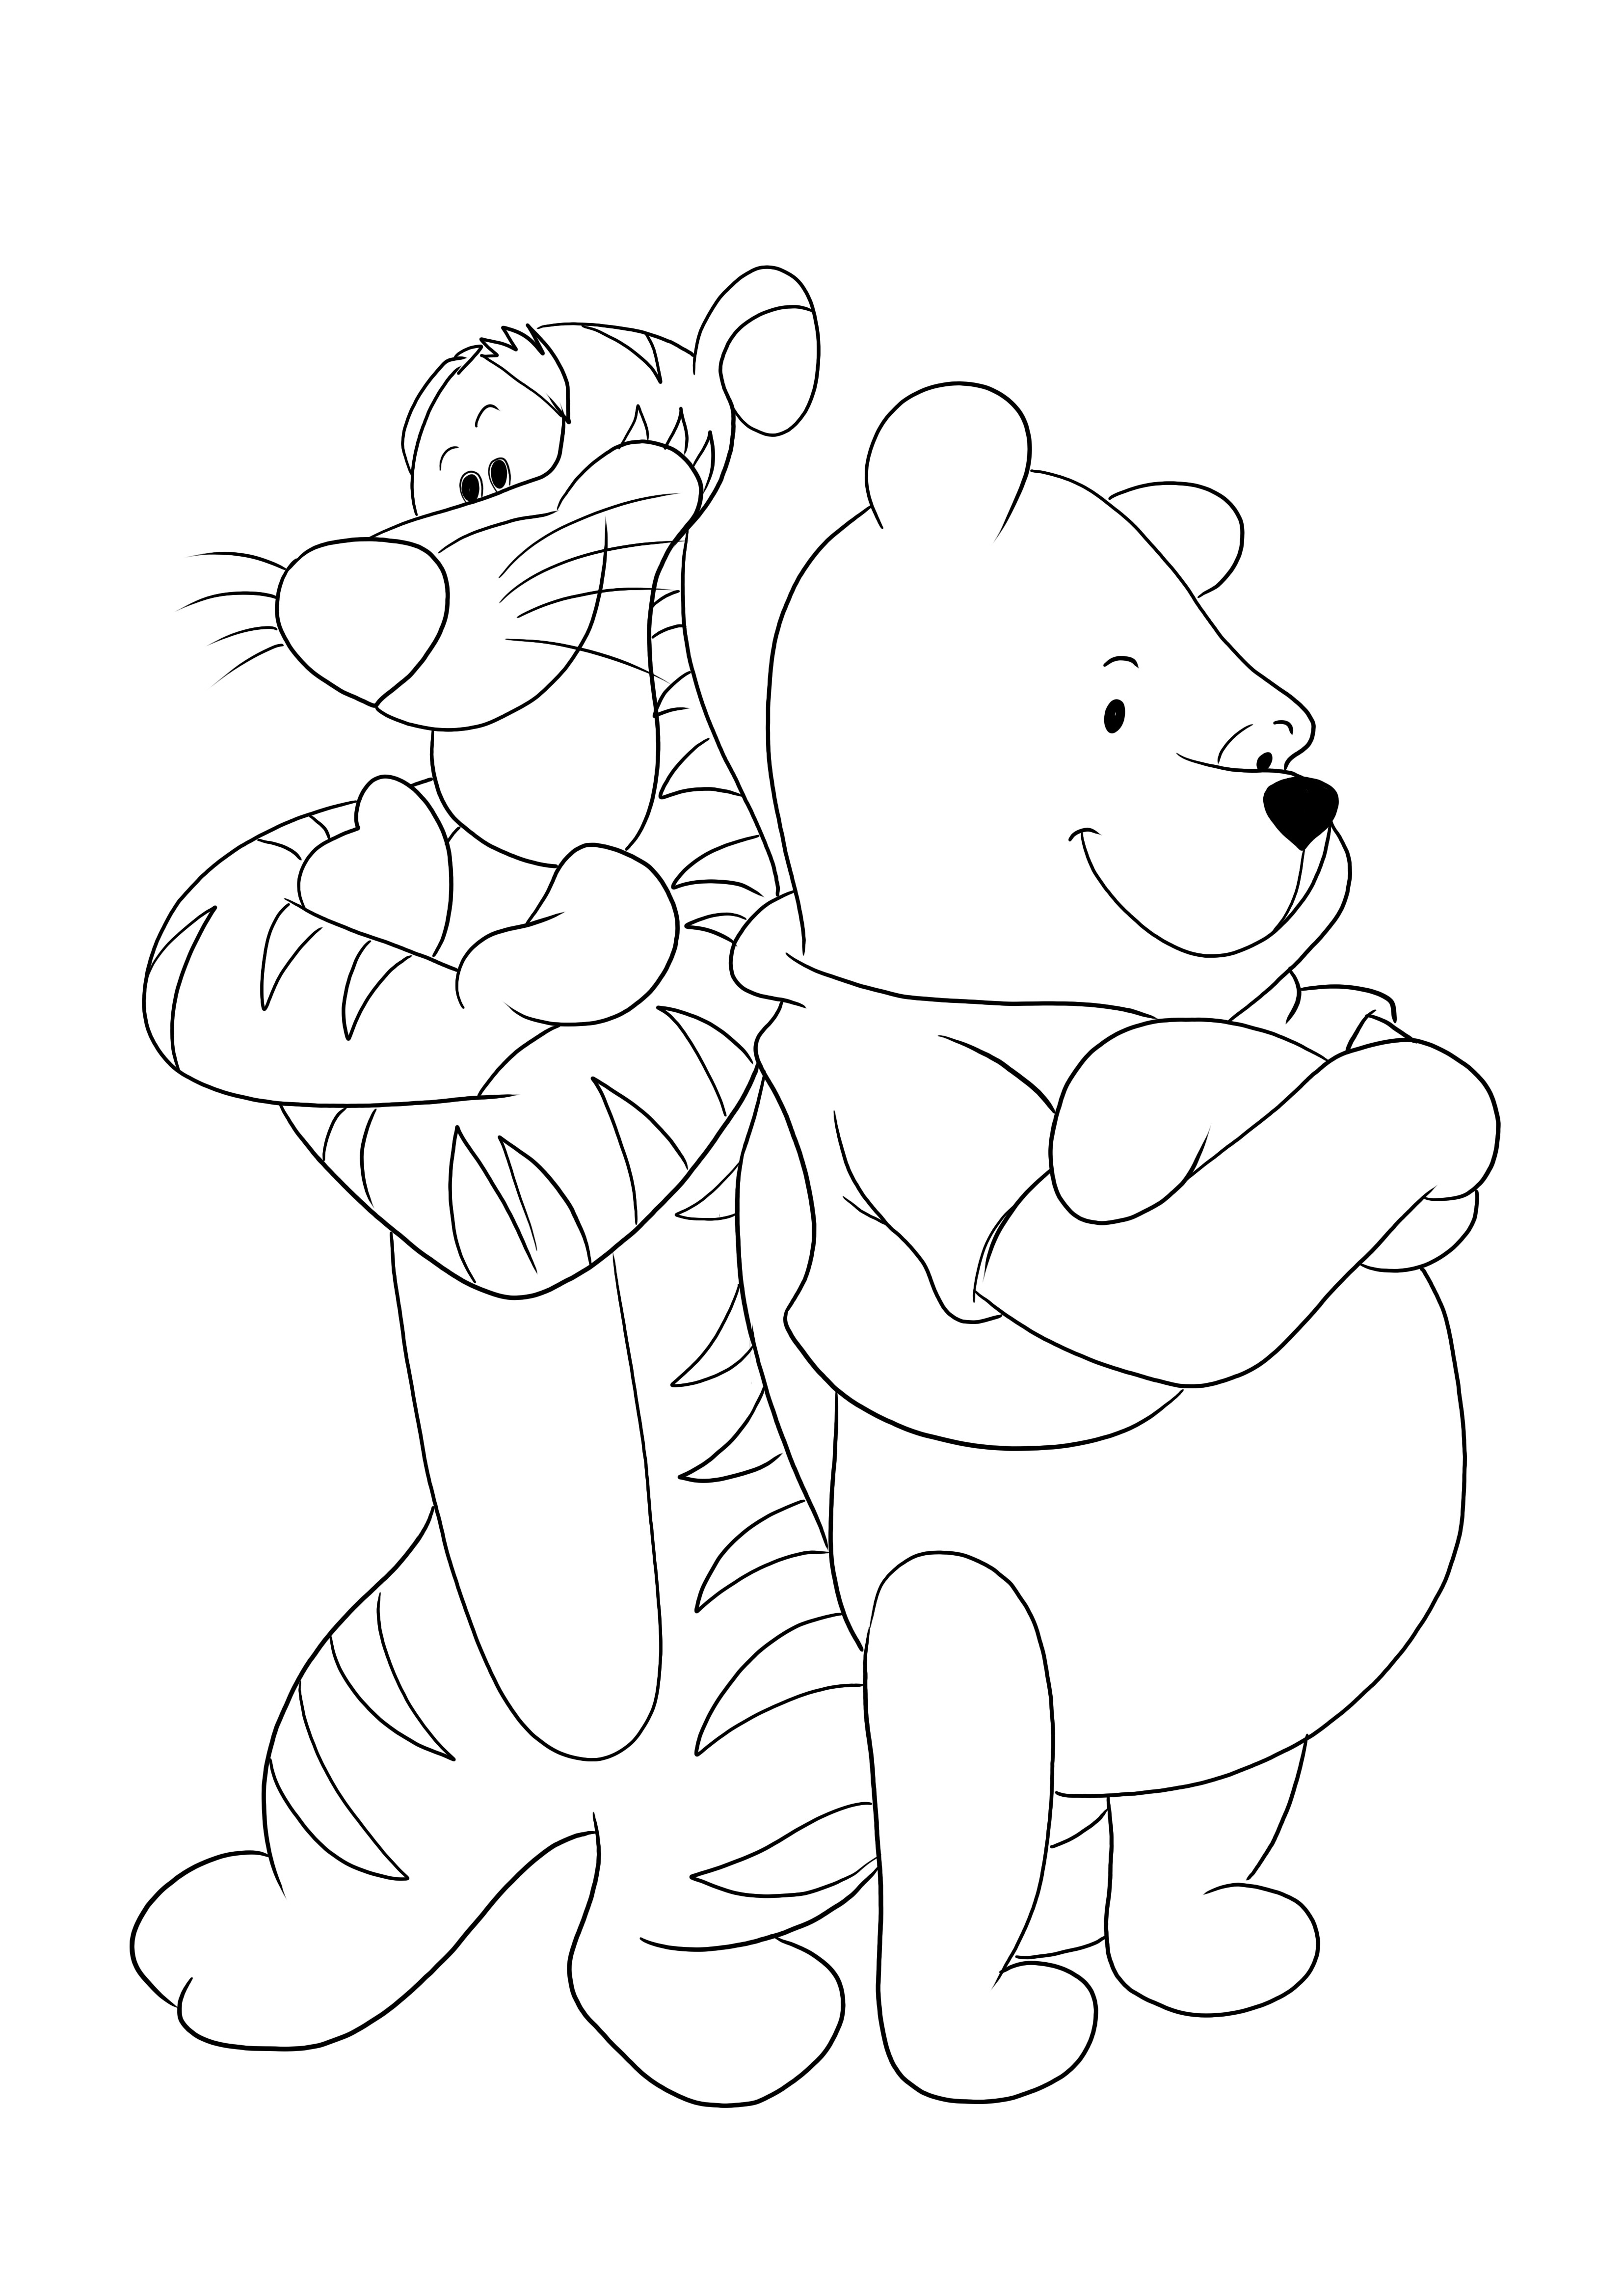 Tigre e Winnie de braços cruzados - uma divertida página para colorir para as crianças imprimirem e colorirem de graça